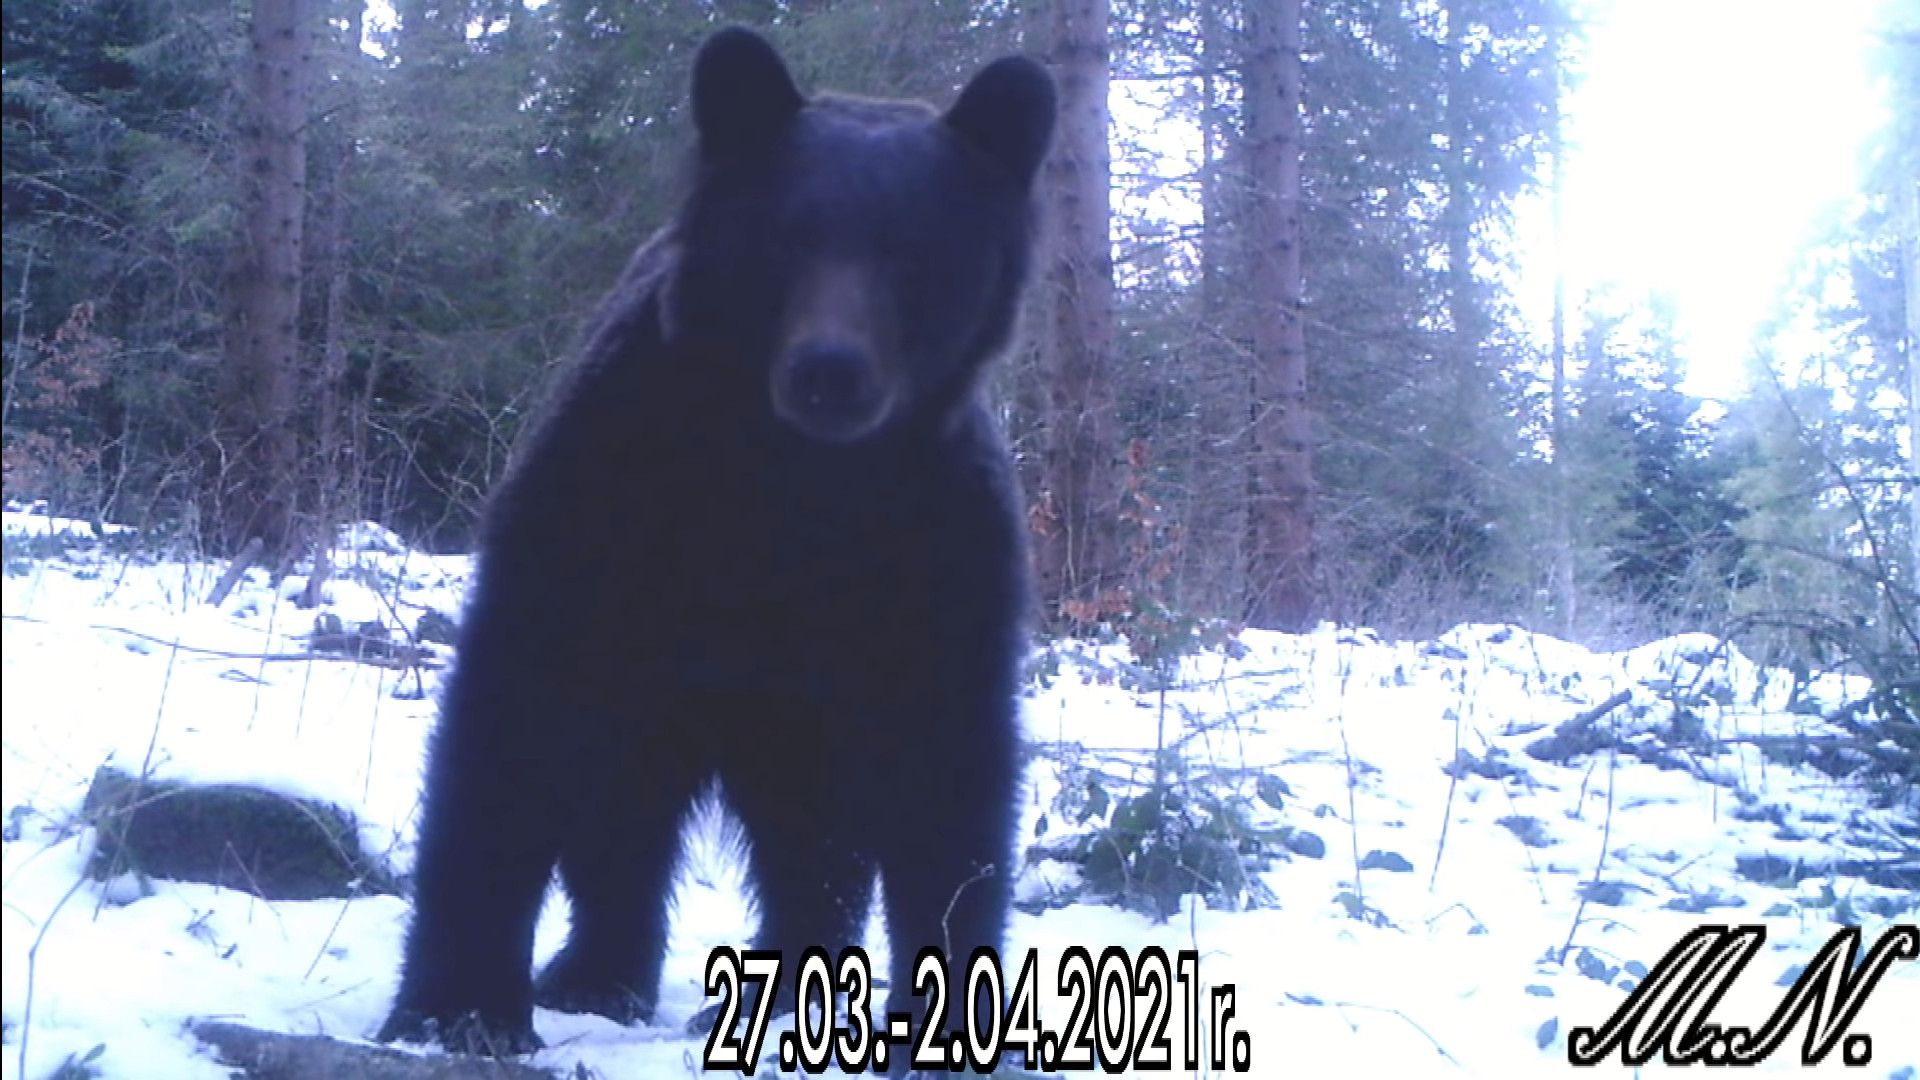 Podkarpacie: Wielki niedźwiedź nagrany przez fotopułapkę leśnika [VIDEO] - Zdjęcie główne